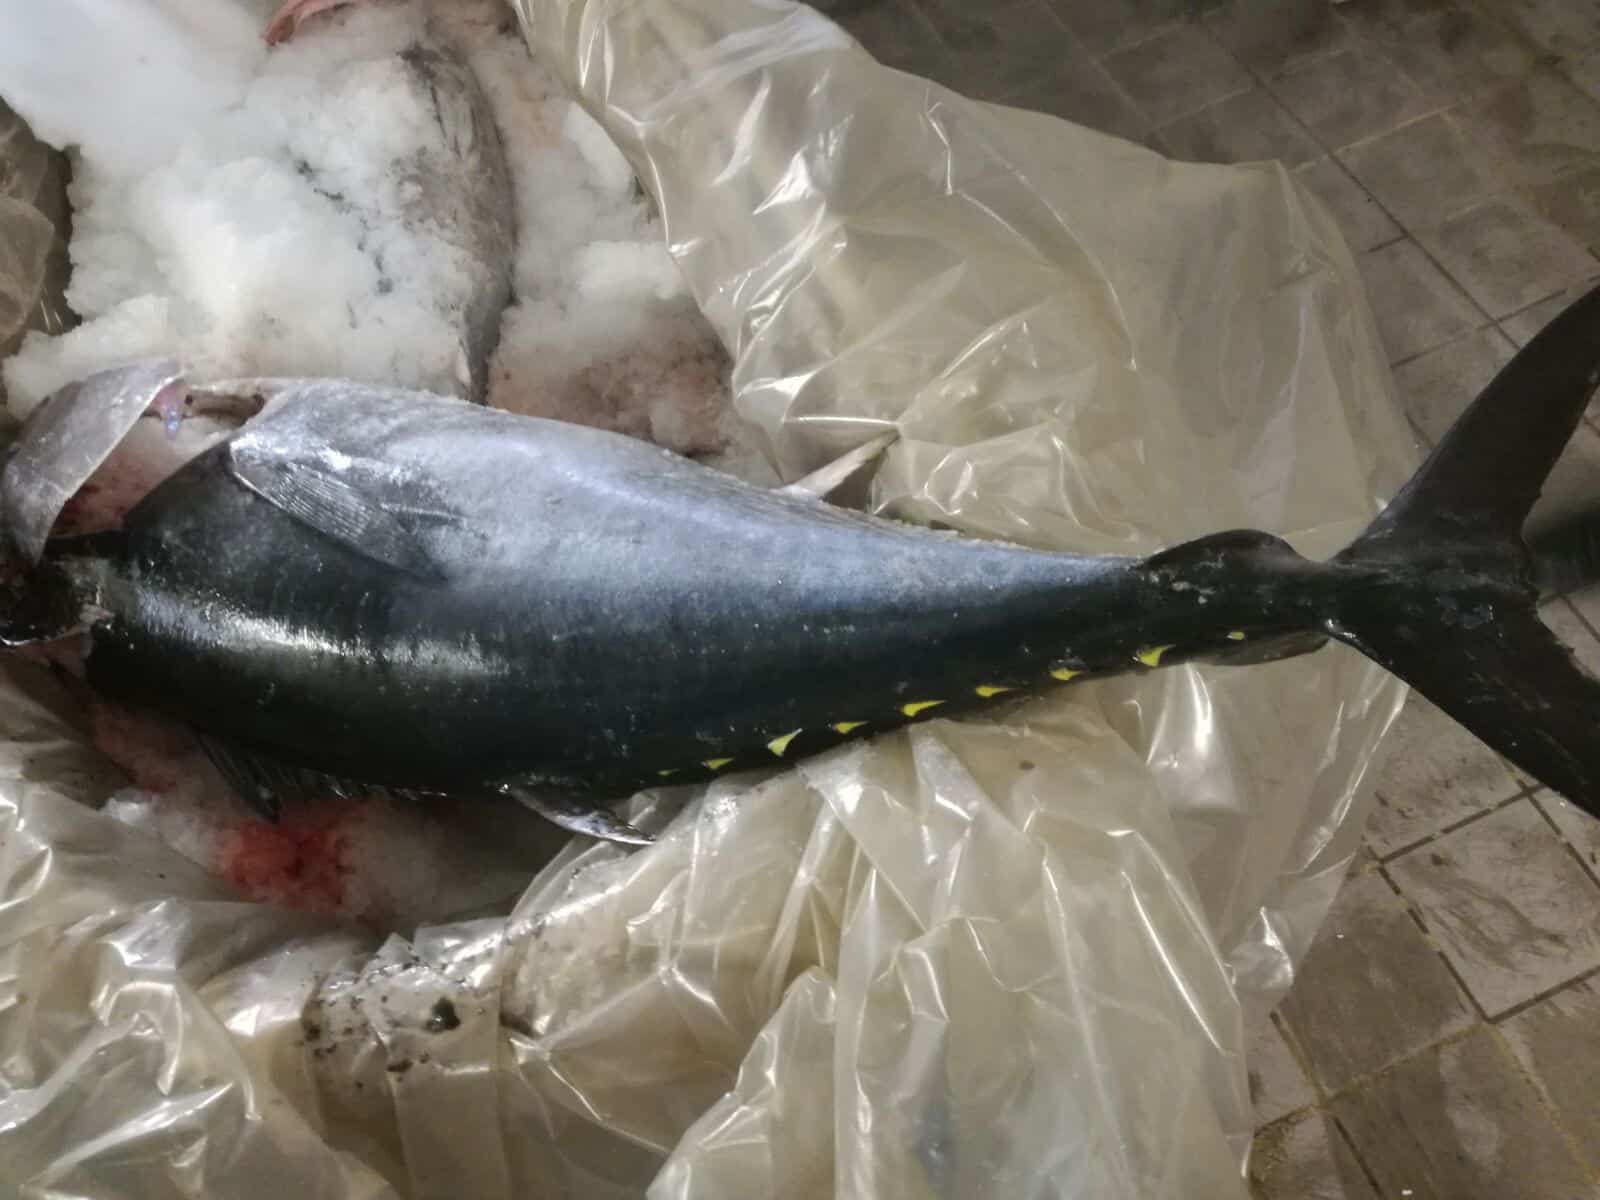 Acquista del tonno da una bancarella del pesce al mercato, lo mangia e si sente male, l’uomo è stato ricoverato ed è stato sequestrato il pesce